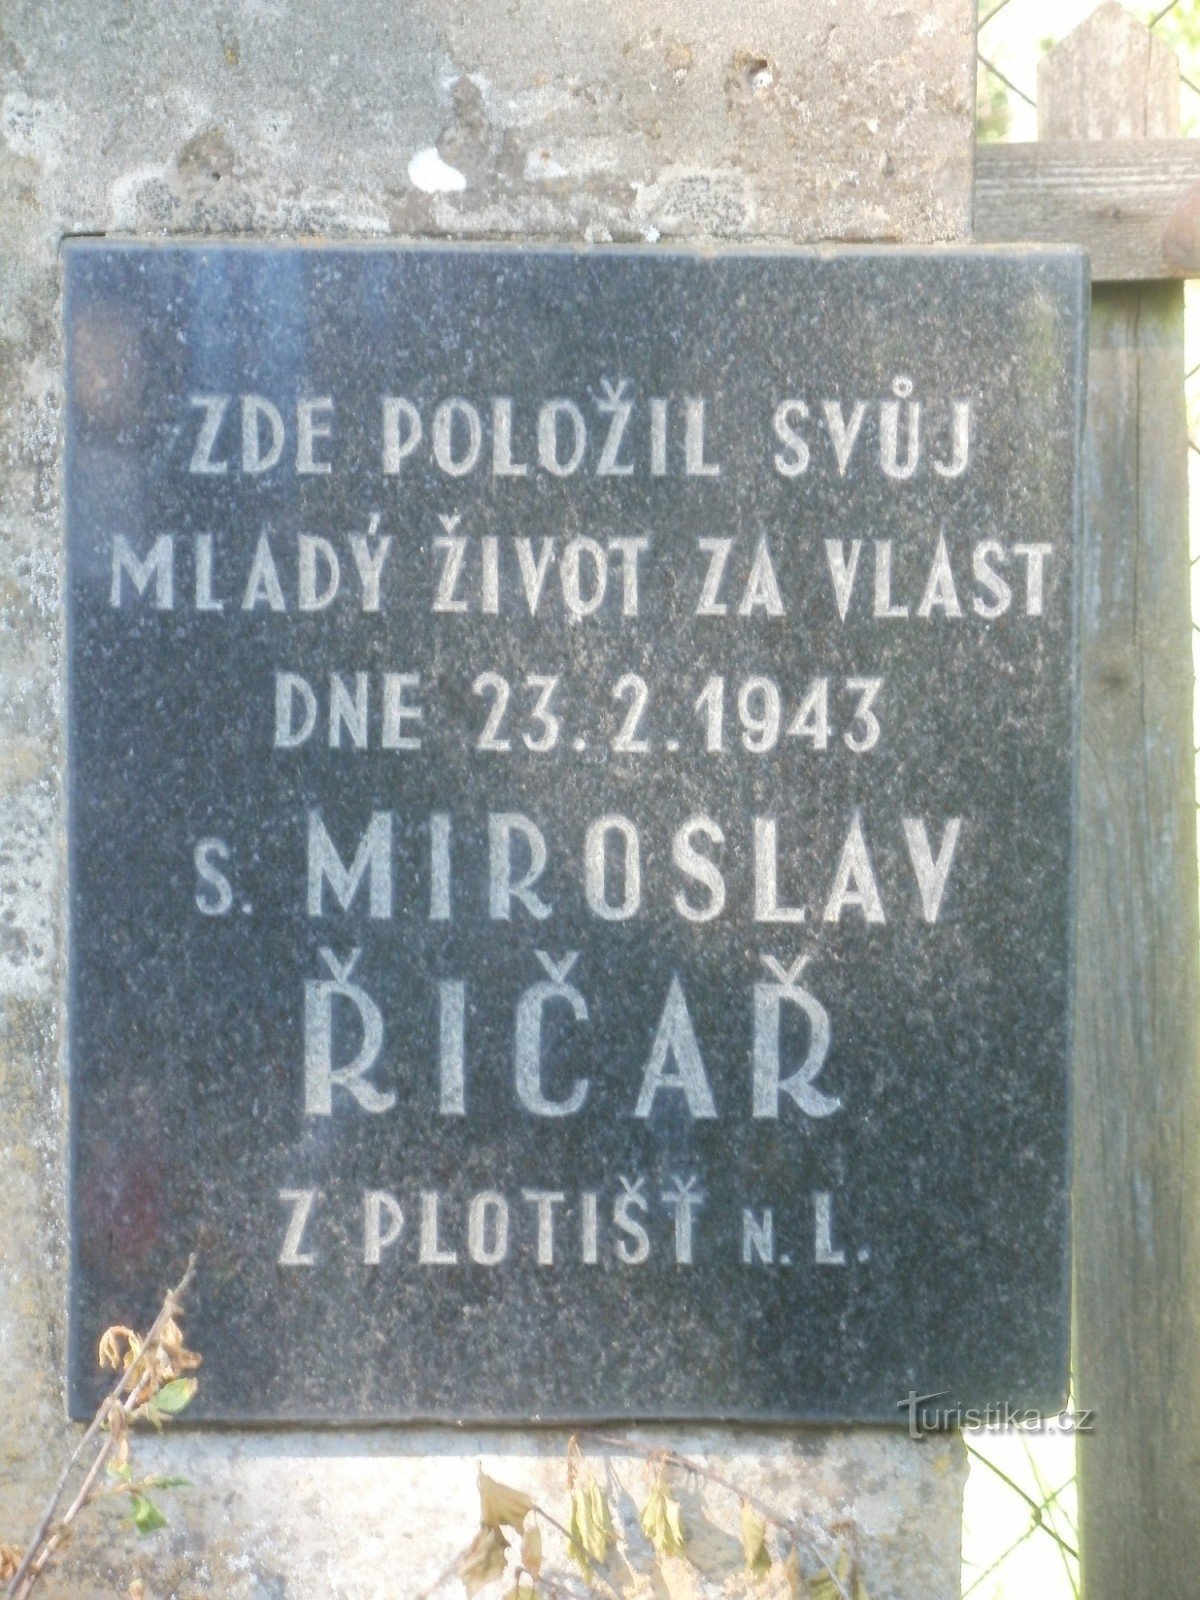 spomenik g. Říčarřju pri Týniště nad Orlicí